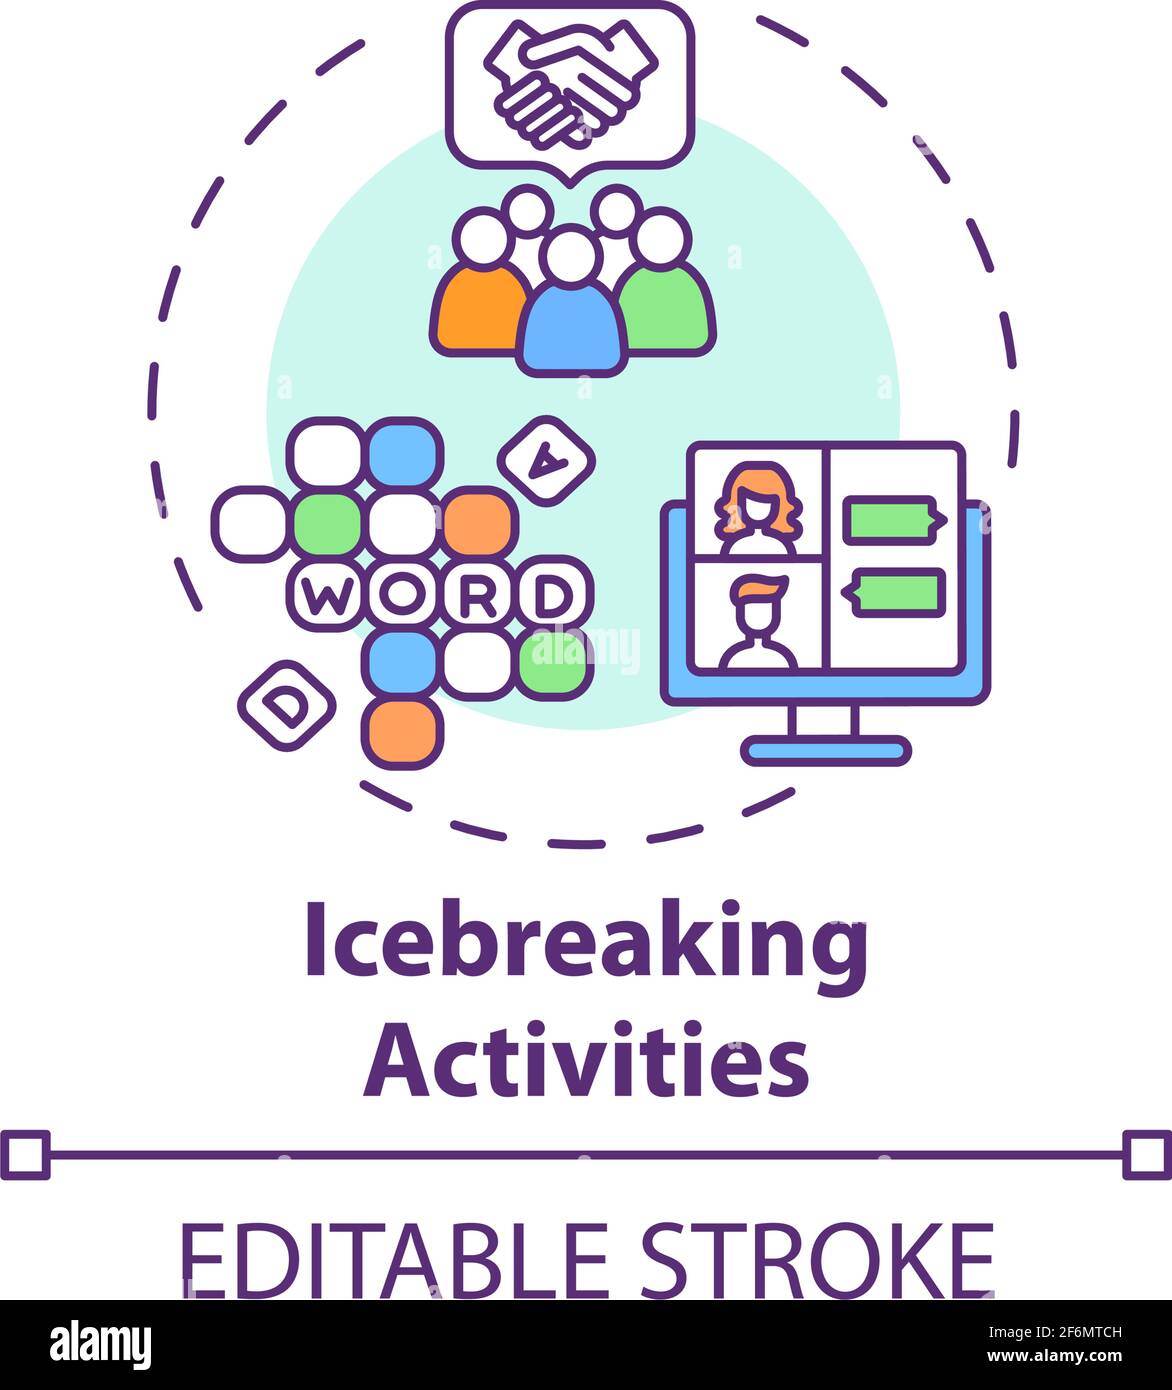 Icebreaking activities concept icon Stock Vector